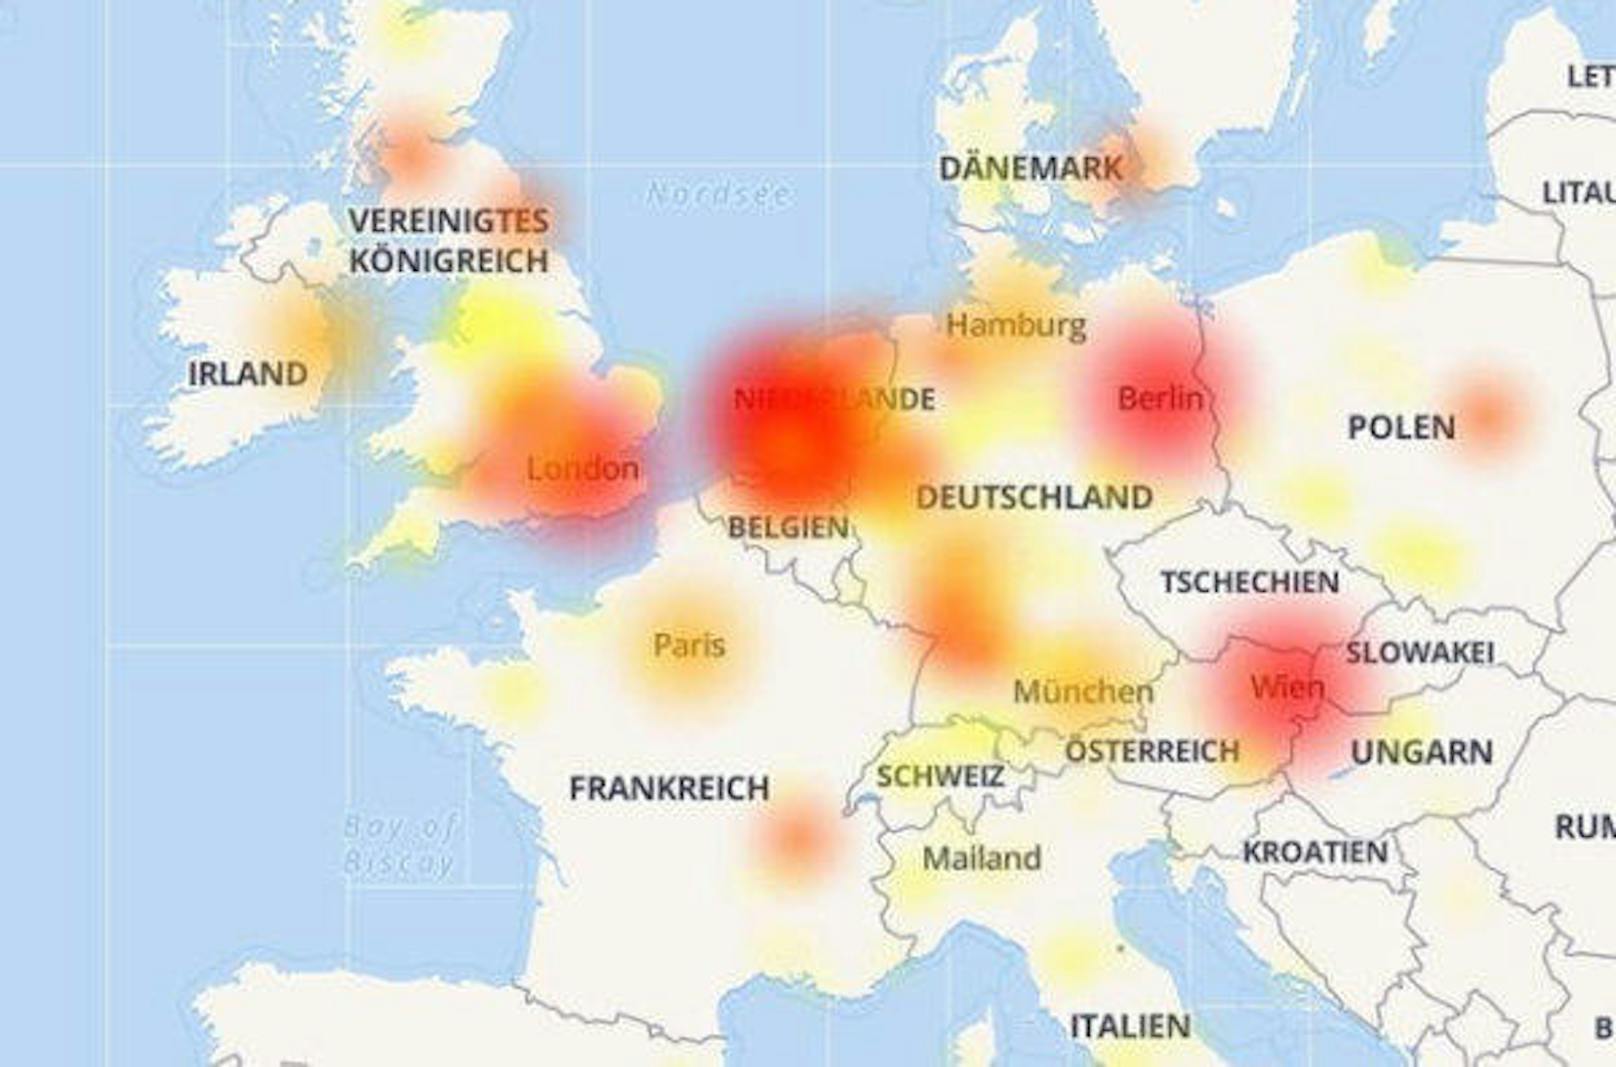 <b>15. März 2018:</b> "Ist Netflix bei noch jemandem down?", fragte sich eine Twitter-Nutzerin. Und tatsächlich schien sie am späten Mittwochabend und in der Nacht auf Donnerstag nicht die Einzige zu sein, die von einer Störung betroffen war. Bei "Allestörungen" häuften sich die Meldungen über Netflix-Probleme. Demnach waren mehrere europäische Länder betroffen. Auch österreichische Nutzer klagten über Störungen.